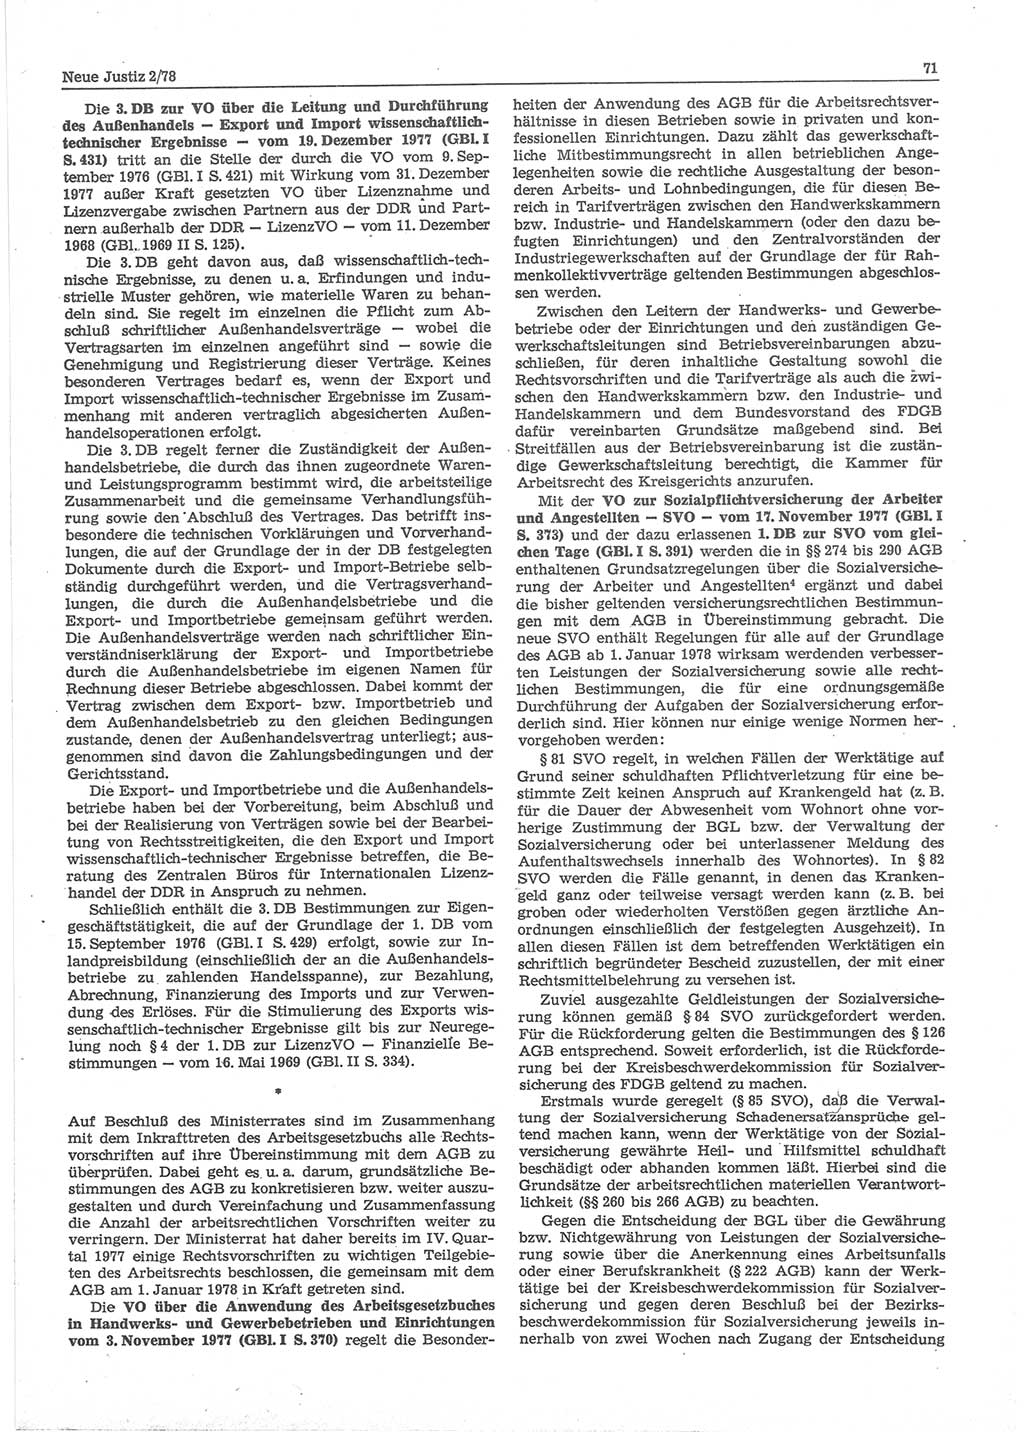 Neue Justiz (NJ), Zeitschrift für sozialistisches Recht und Gesetzlichkeit [Deutsche Demokratische Republik (DDR)], 32. Jahrgang 1978, Seite 71 (NJ DDR 1978, S. 71)